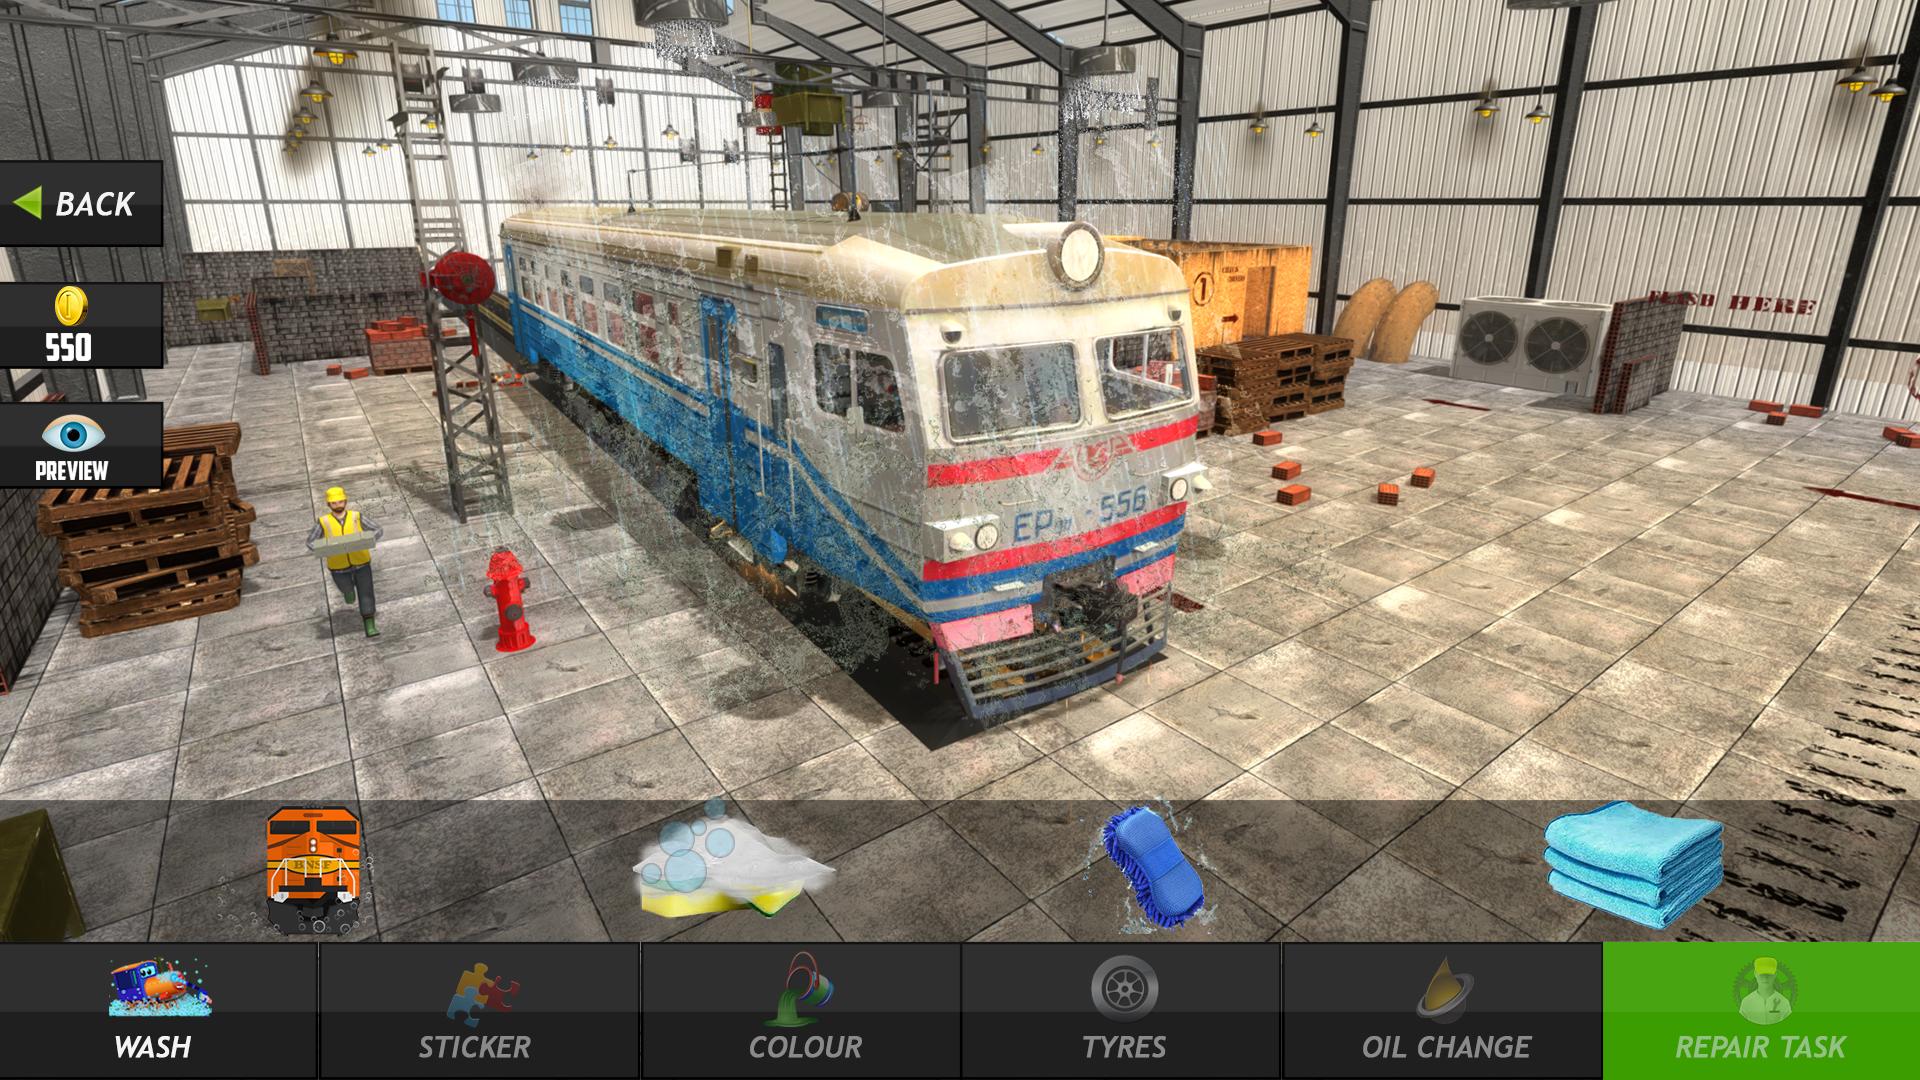 Train mechanic simulator. Трейн механик симулятор 2017. Симулятор Workshop. Механик поезда. Механики поездов.